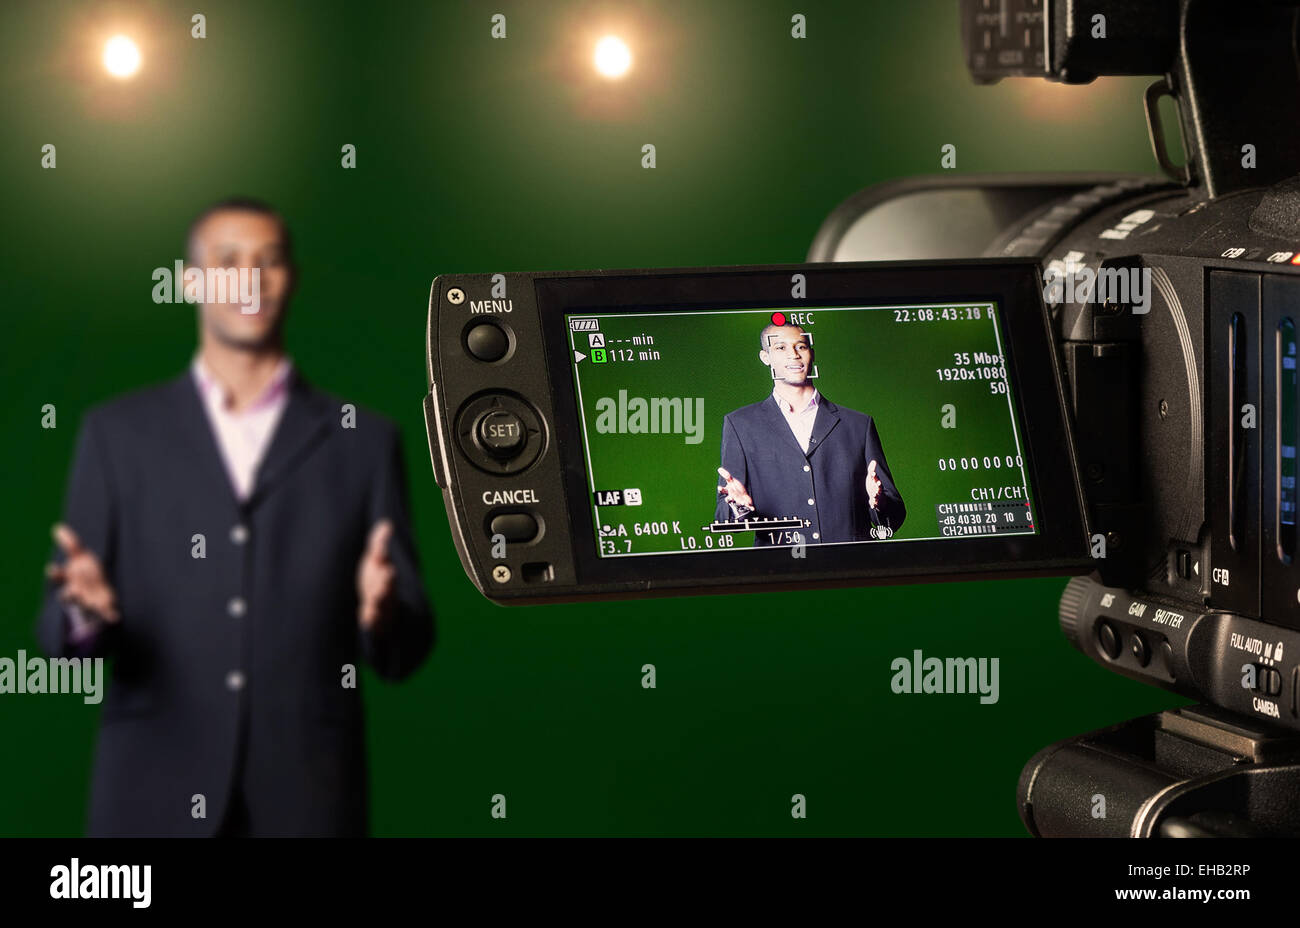 TV-Moderatorin in einem green-Screen TV Studio, gesehen durch das LCD-Display einer Digitalkamera. Selektiven Fokus. Stockfoto